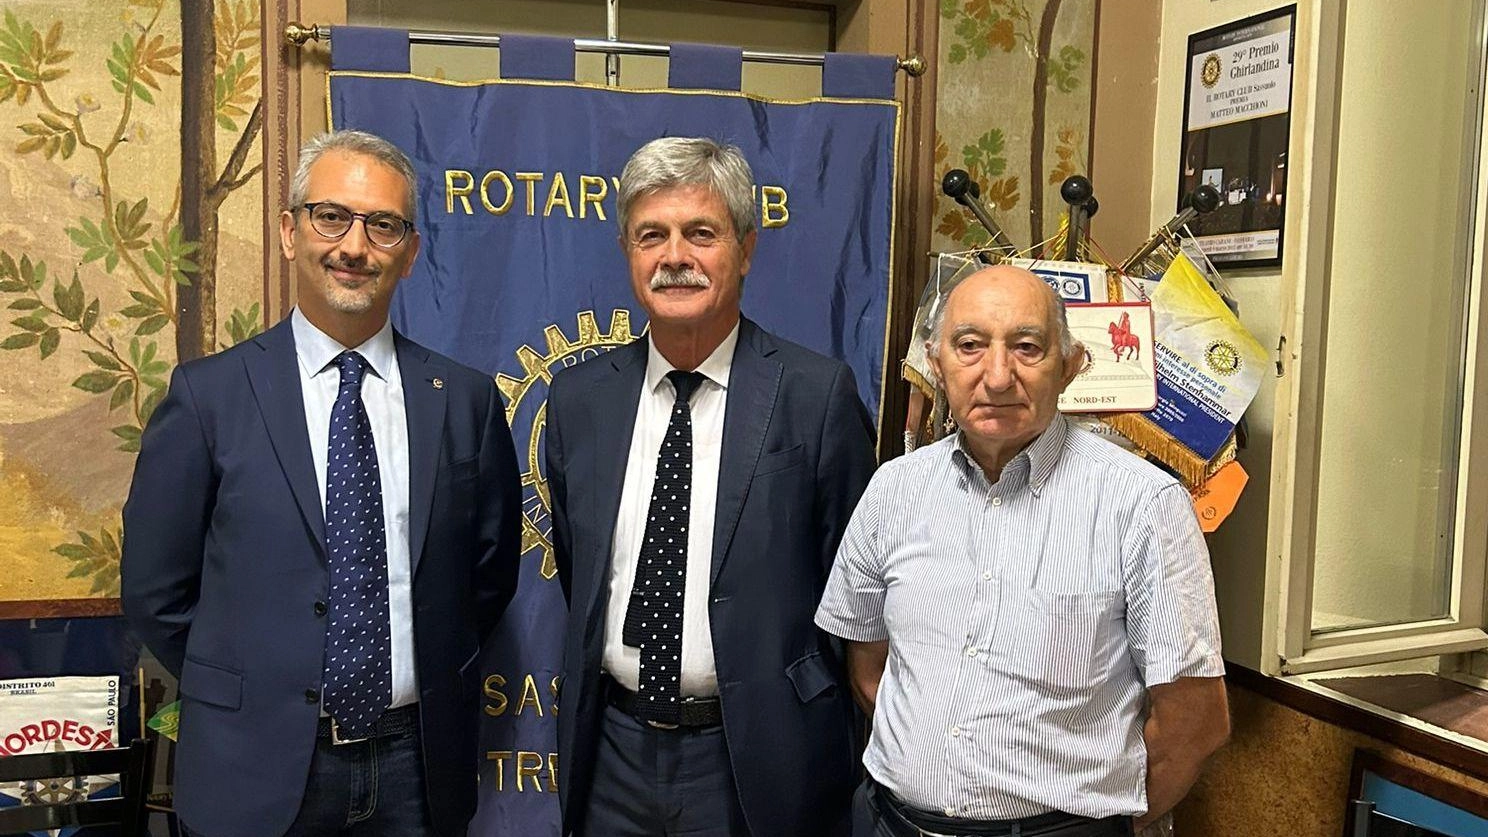 

Inaugurata a Fiorano la sede del Rotary di Sassuolo: cultura democratica e solidarietà sociale